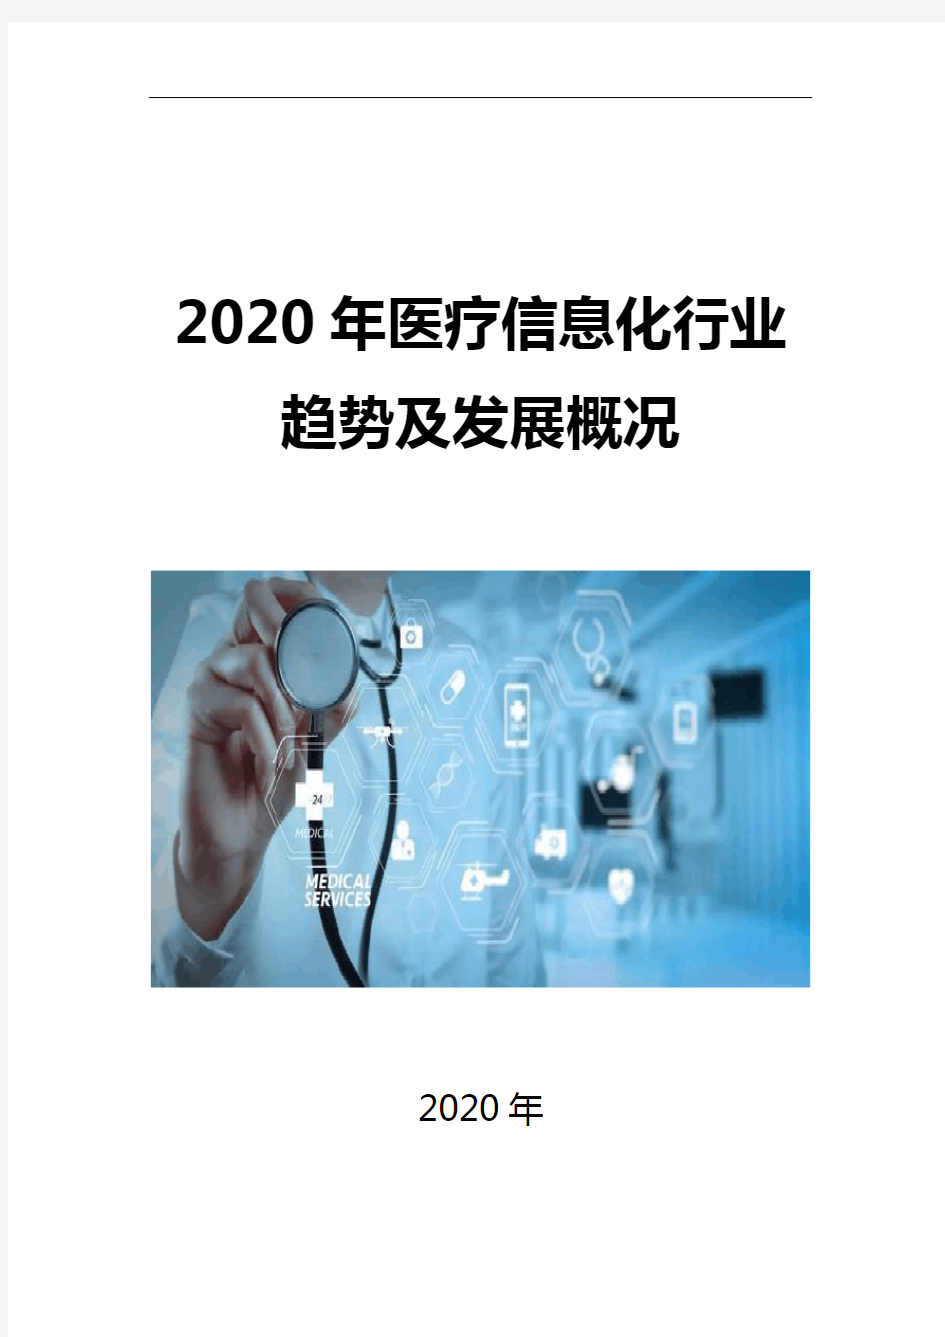 2020医疗信息化行业趋势及发展概况